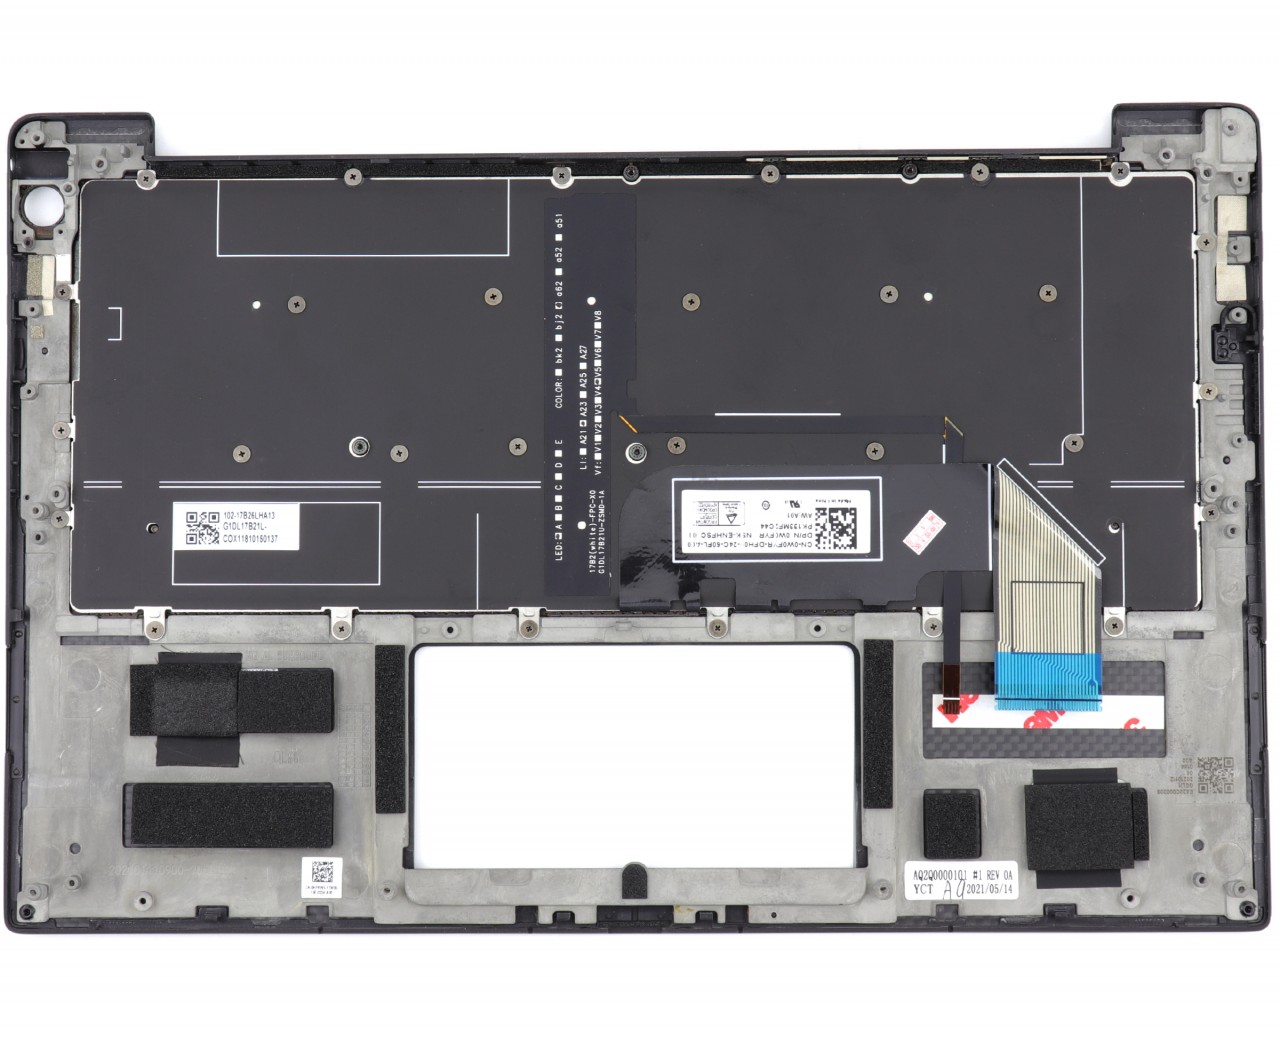 Tastatura Dell AQ200000101 Neagra cu Palmrest Negru iluminata backlit image4